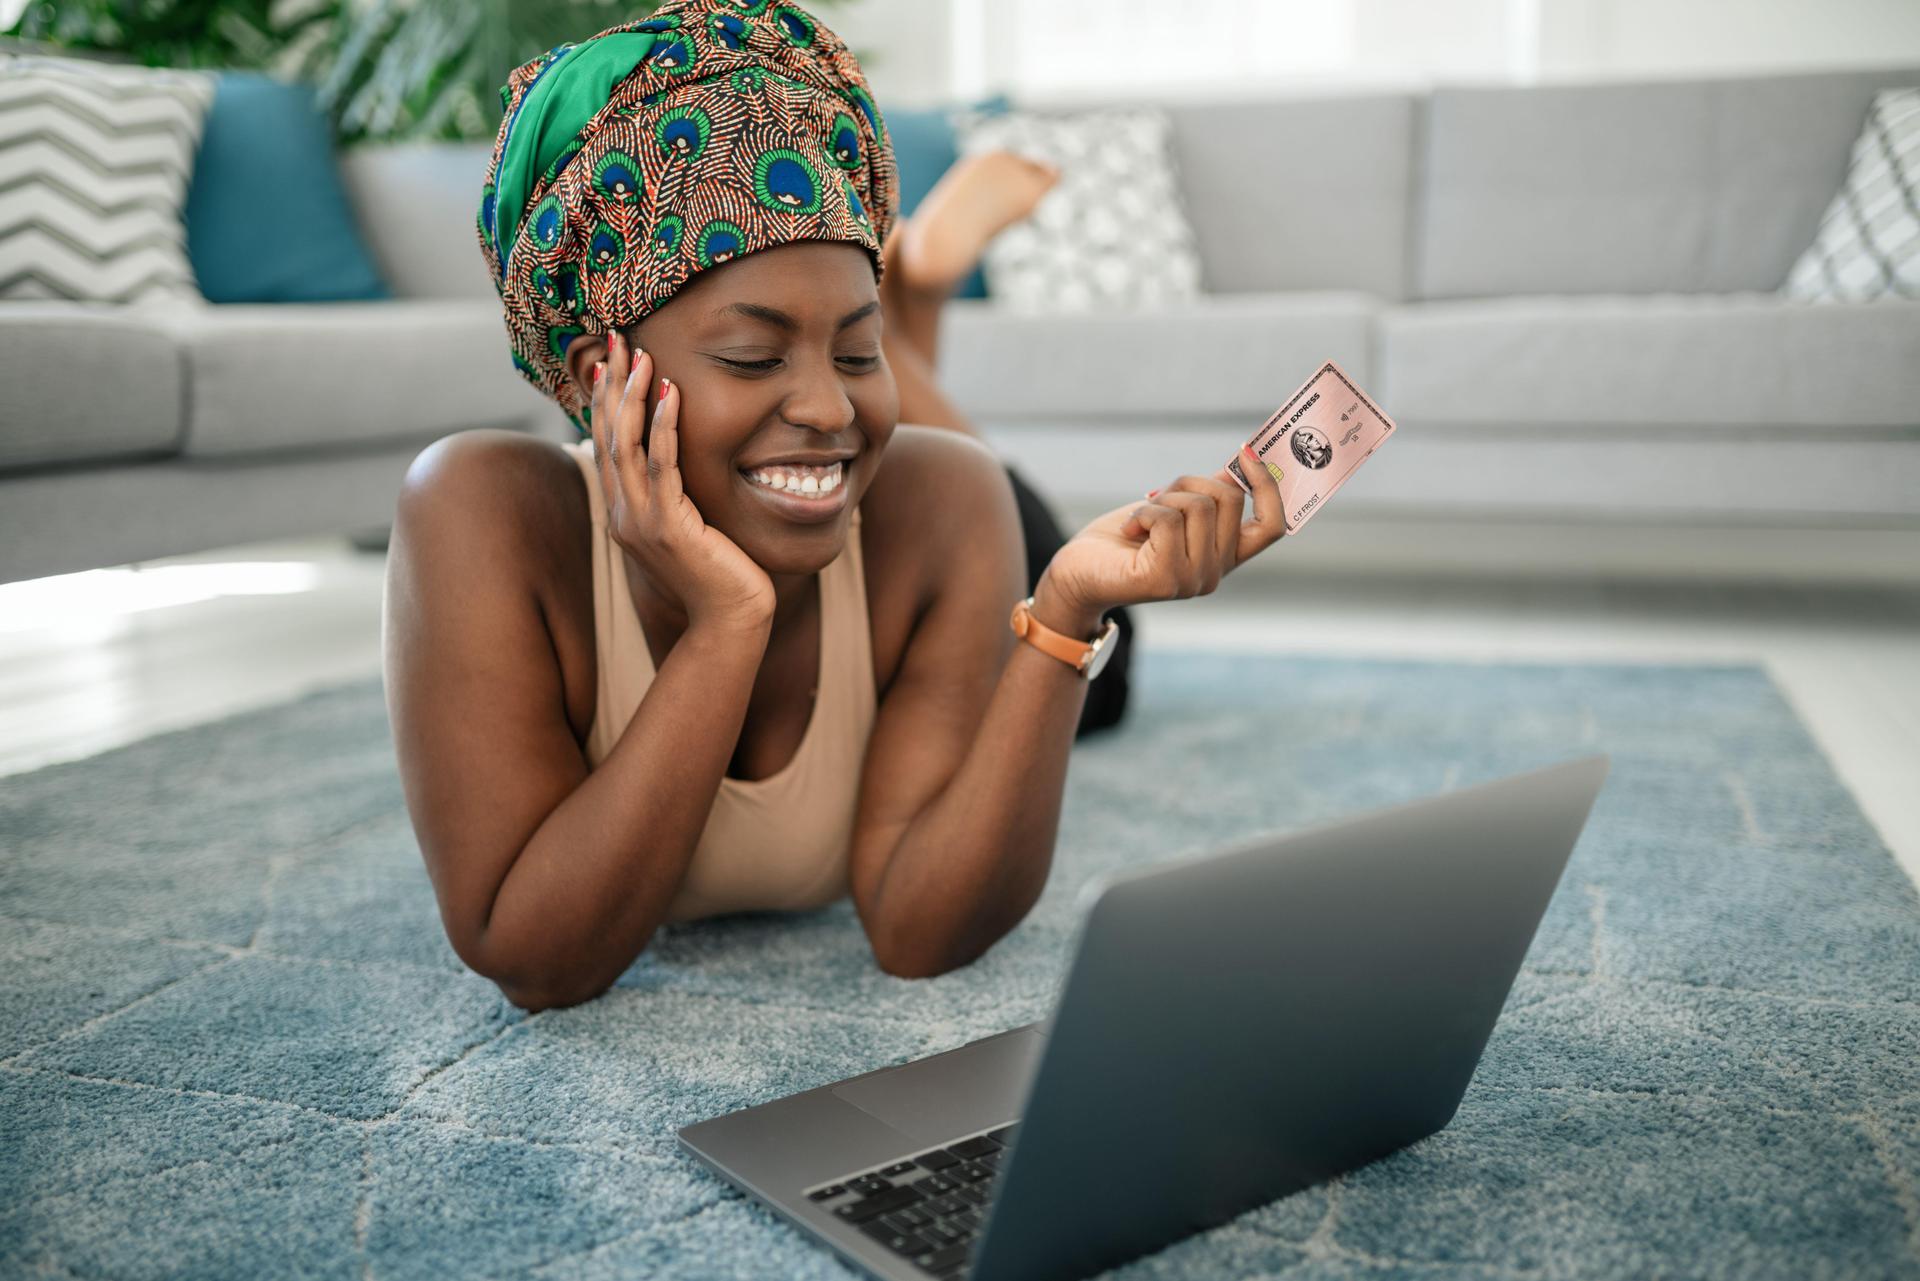 Eine junge, dunkelhäutige Frau liegt bäuchlings auf einem grauen Teppich, vor ihr ein Laptop. Sie lächelt und hält eine AMEX Karte in der linken Hand.